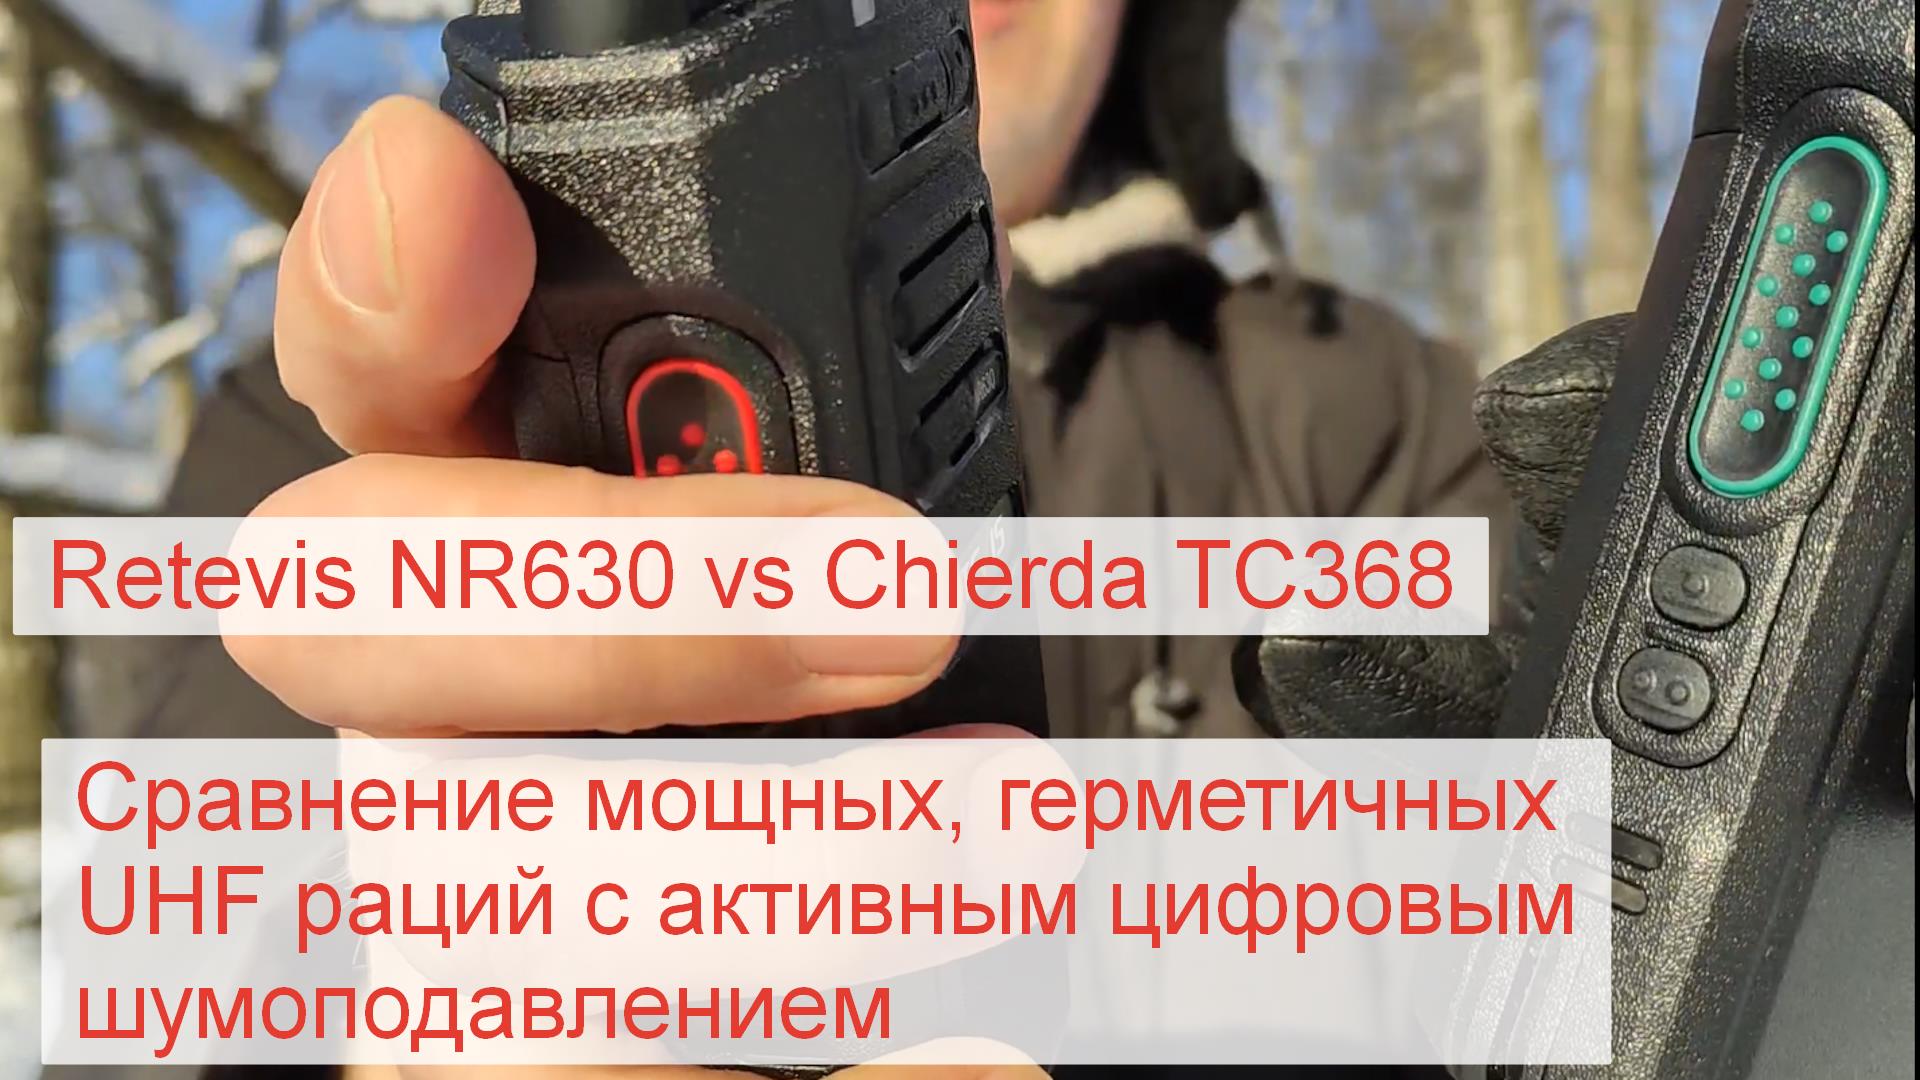 Retevis NR630 vs Chierda TC368 - сравнение мощных герметичных UHF раций с умным шумоподавлением